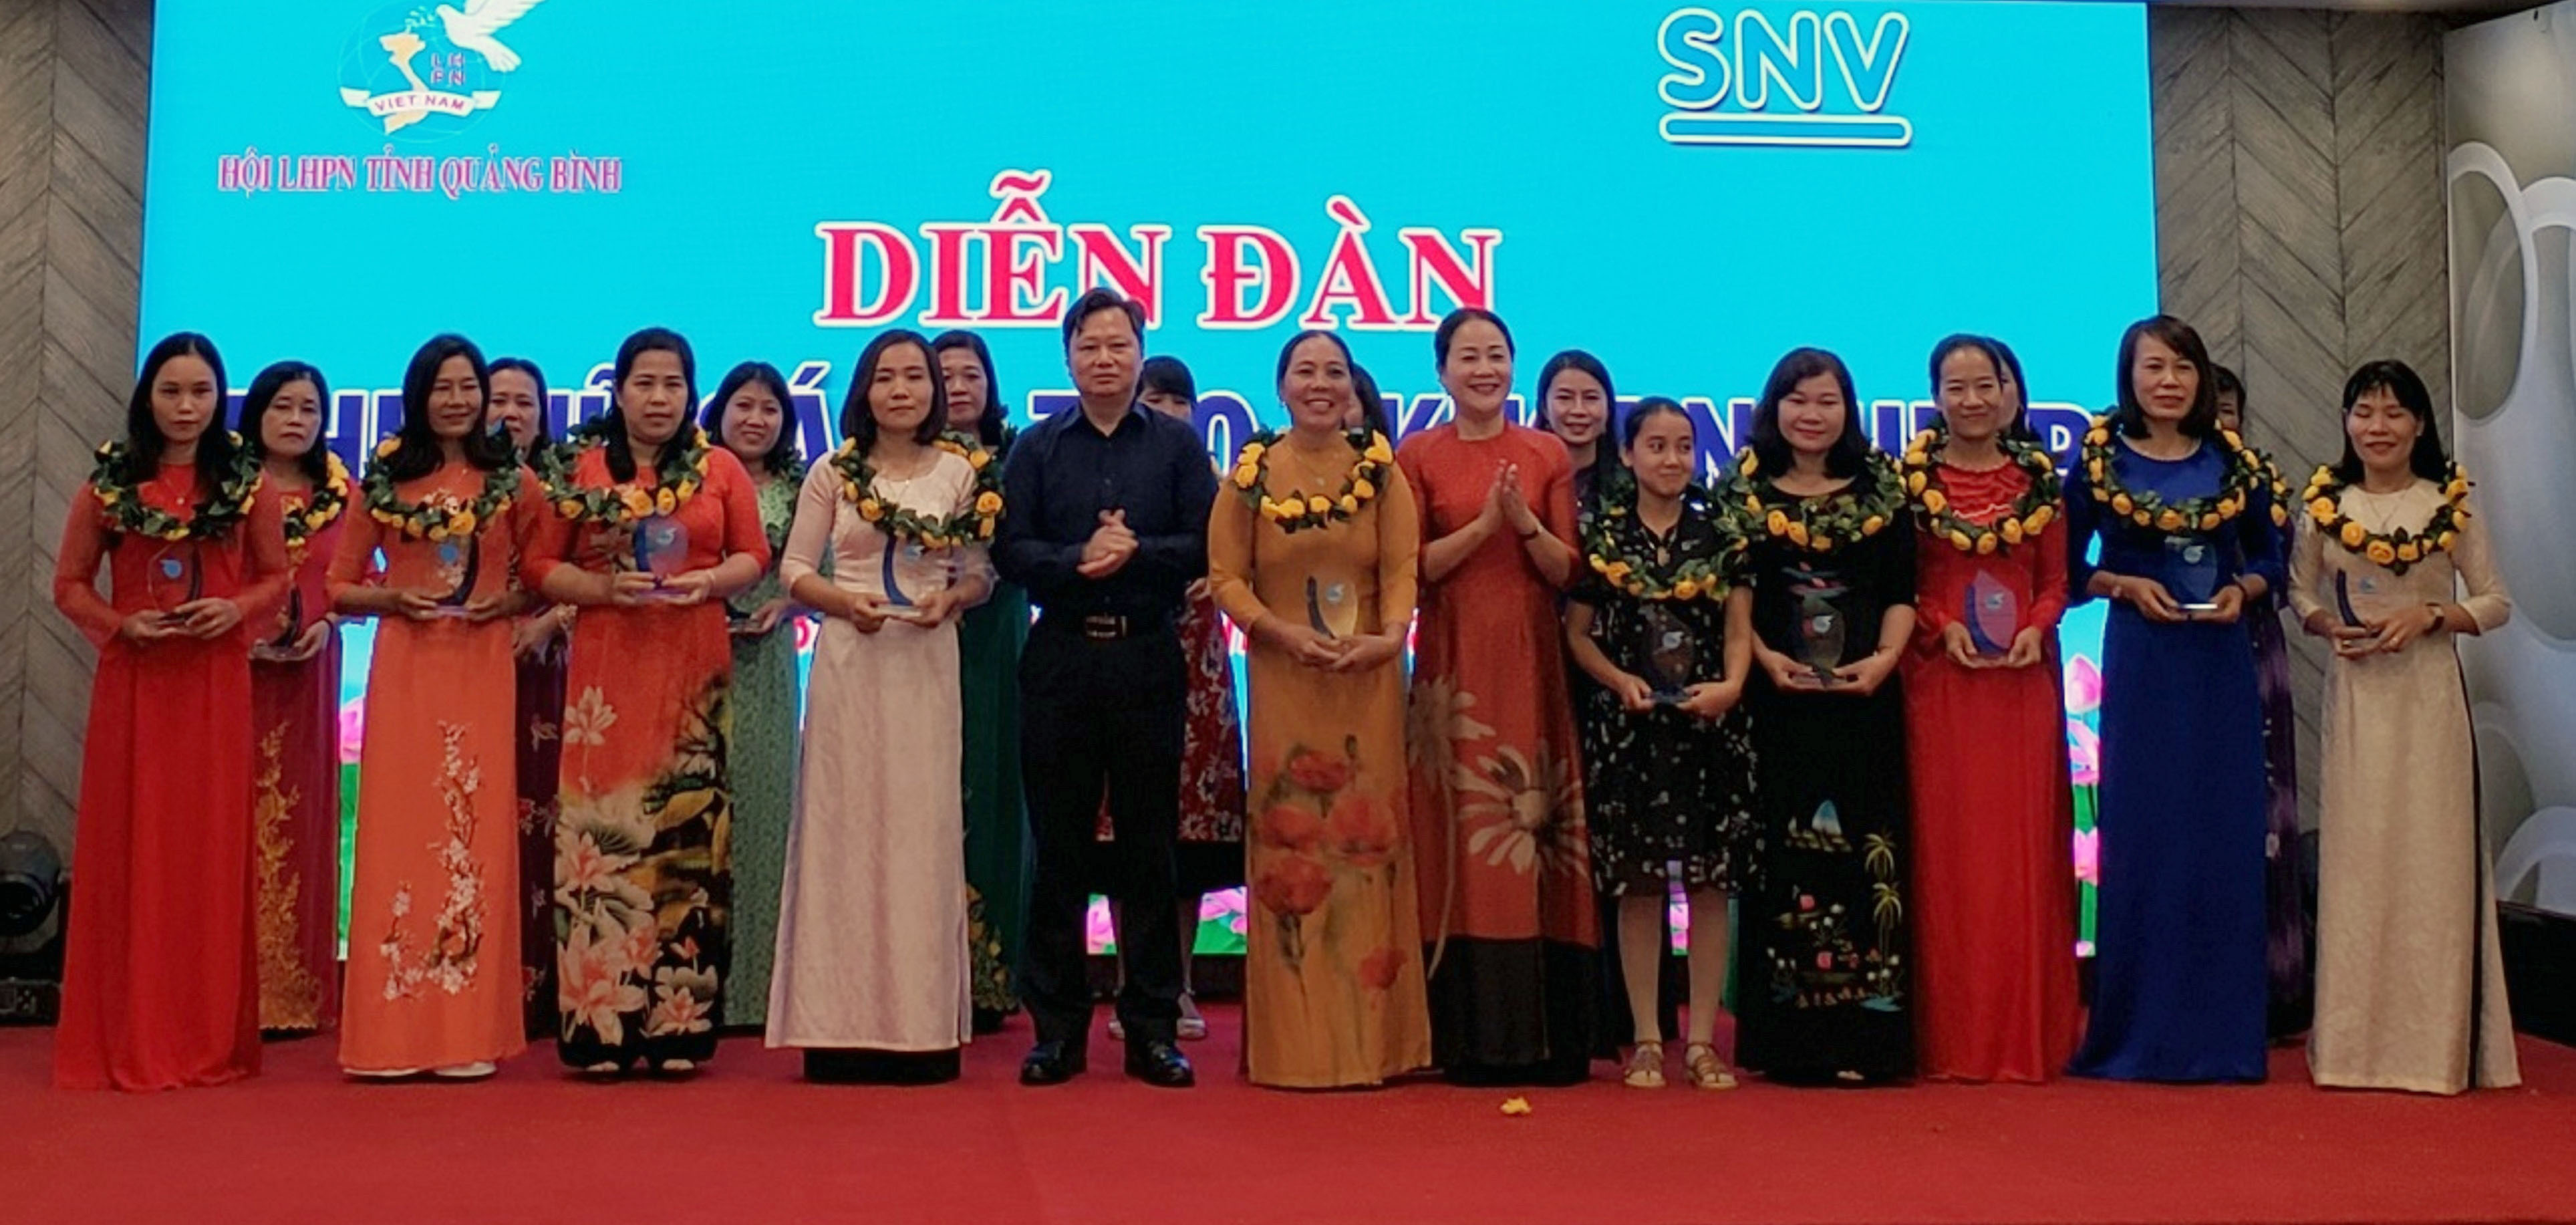 Đồng chí Nguyễn Tiến Hoàng, Tỉnh ủy viên, Phó Chủ tịch UBND tỉnh trao hoa và cúp cho các điển hình phụ nữ trong phong trào khởi nghiệp.